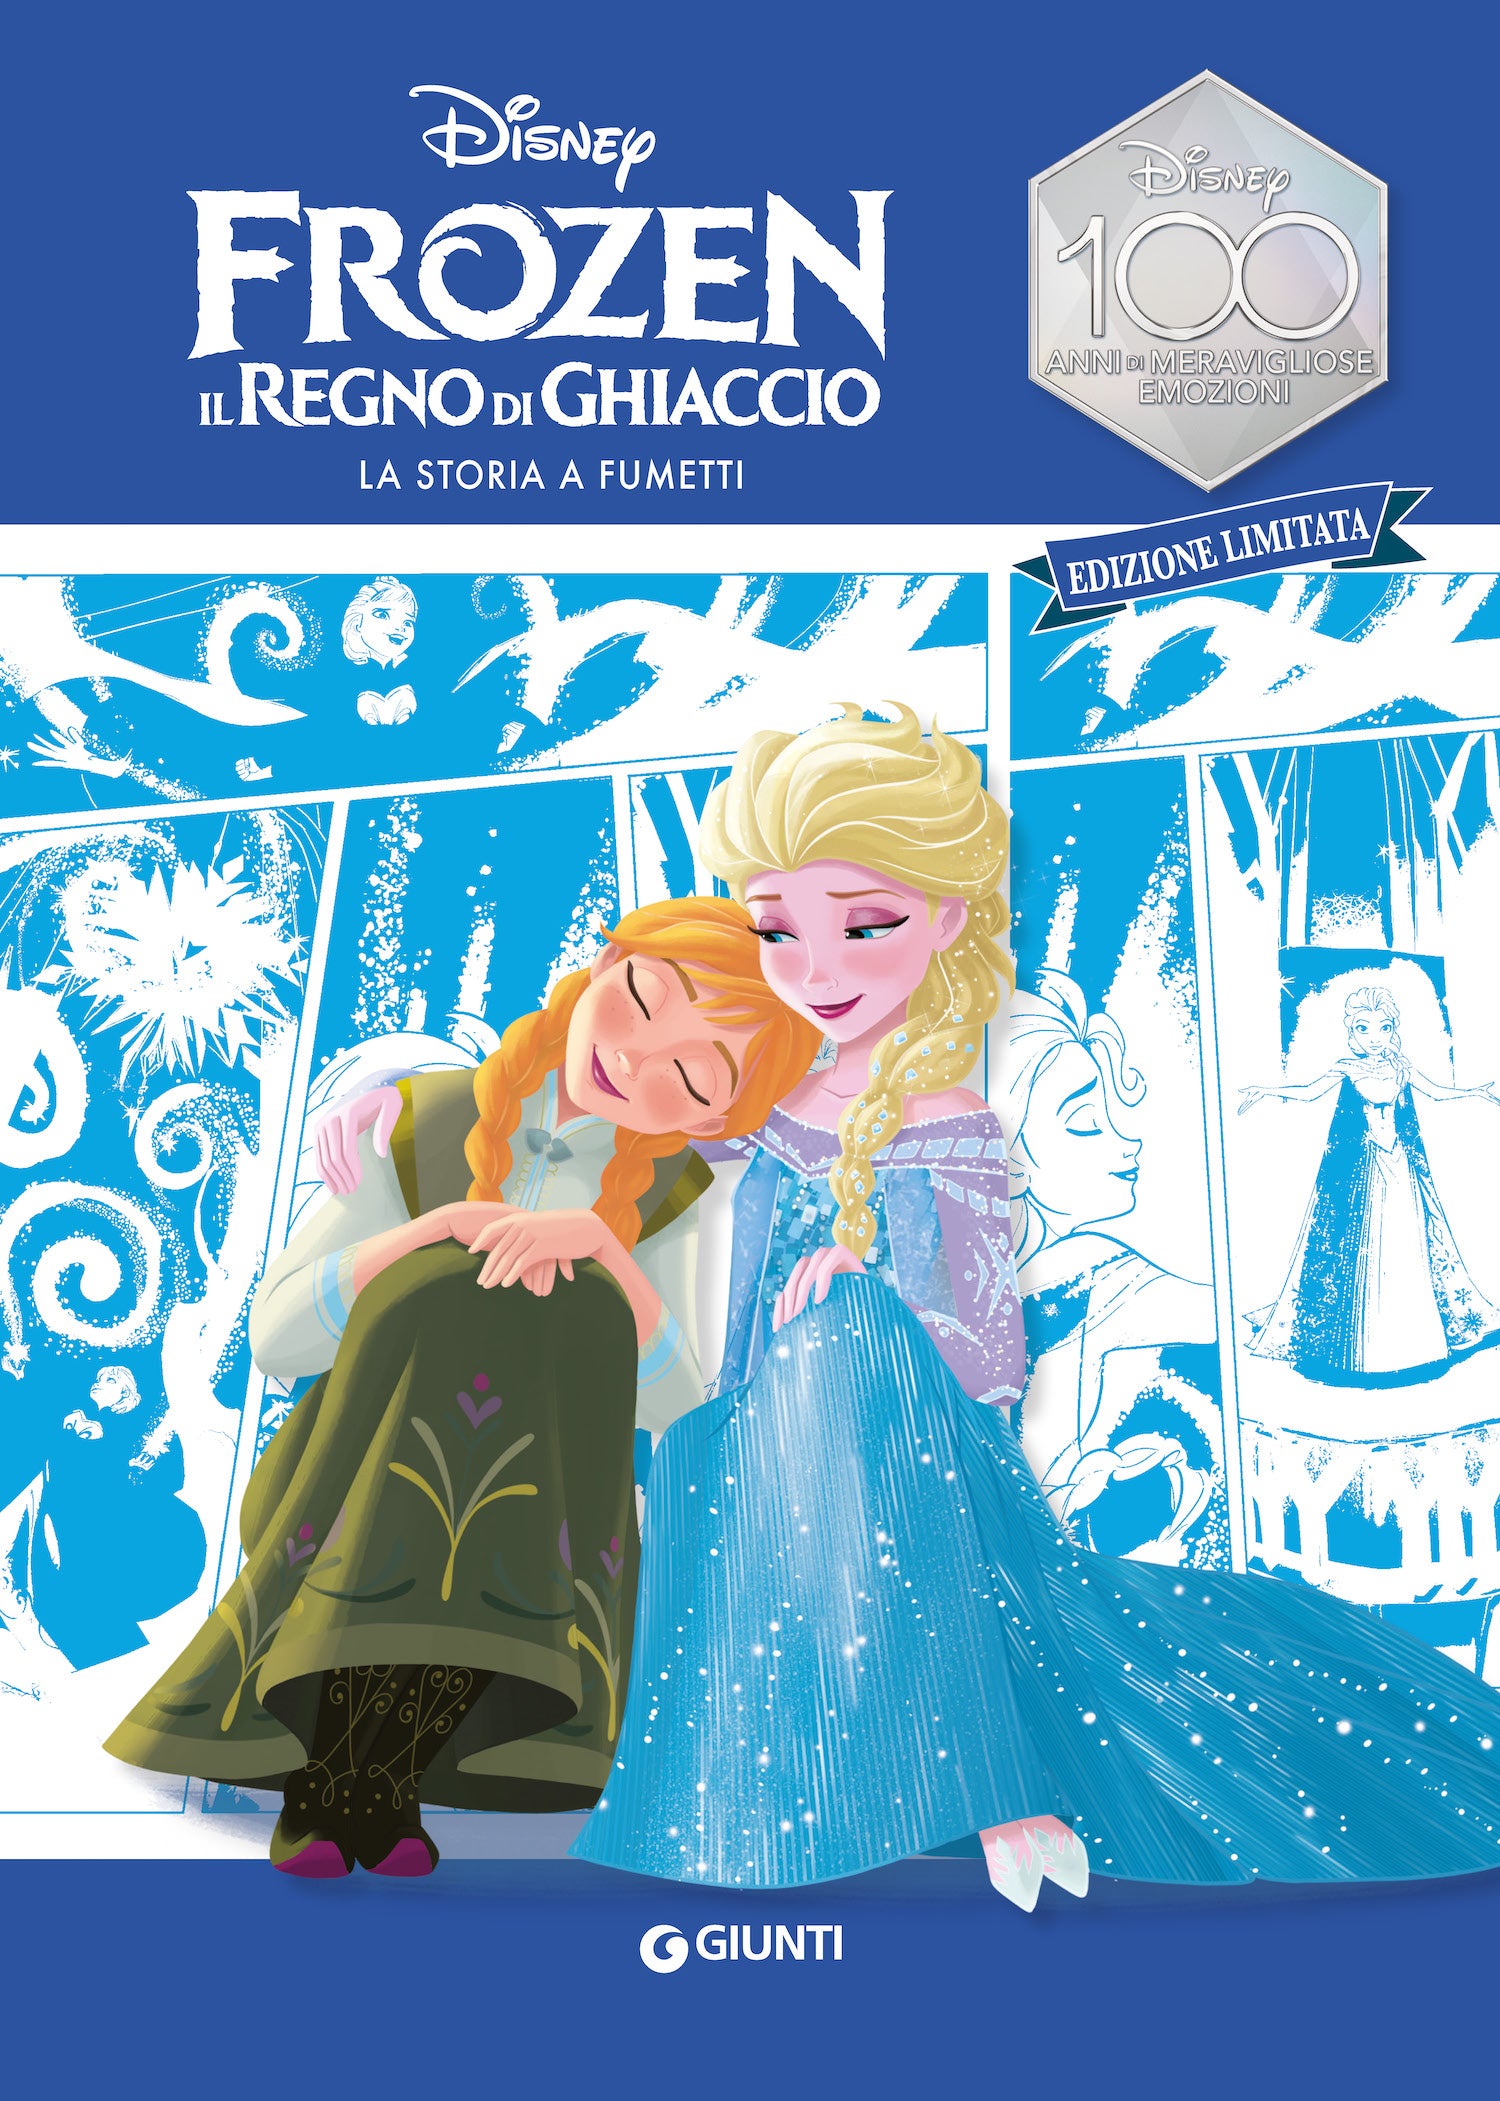 Frozen La storia a fumetti Edizione limitata